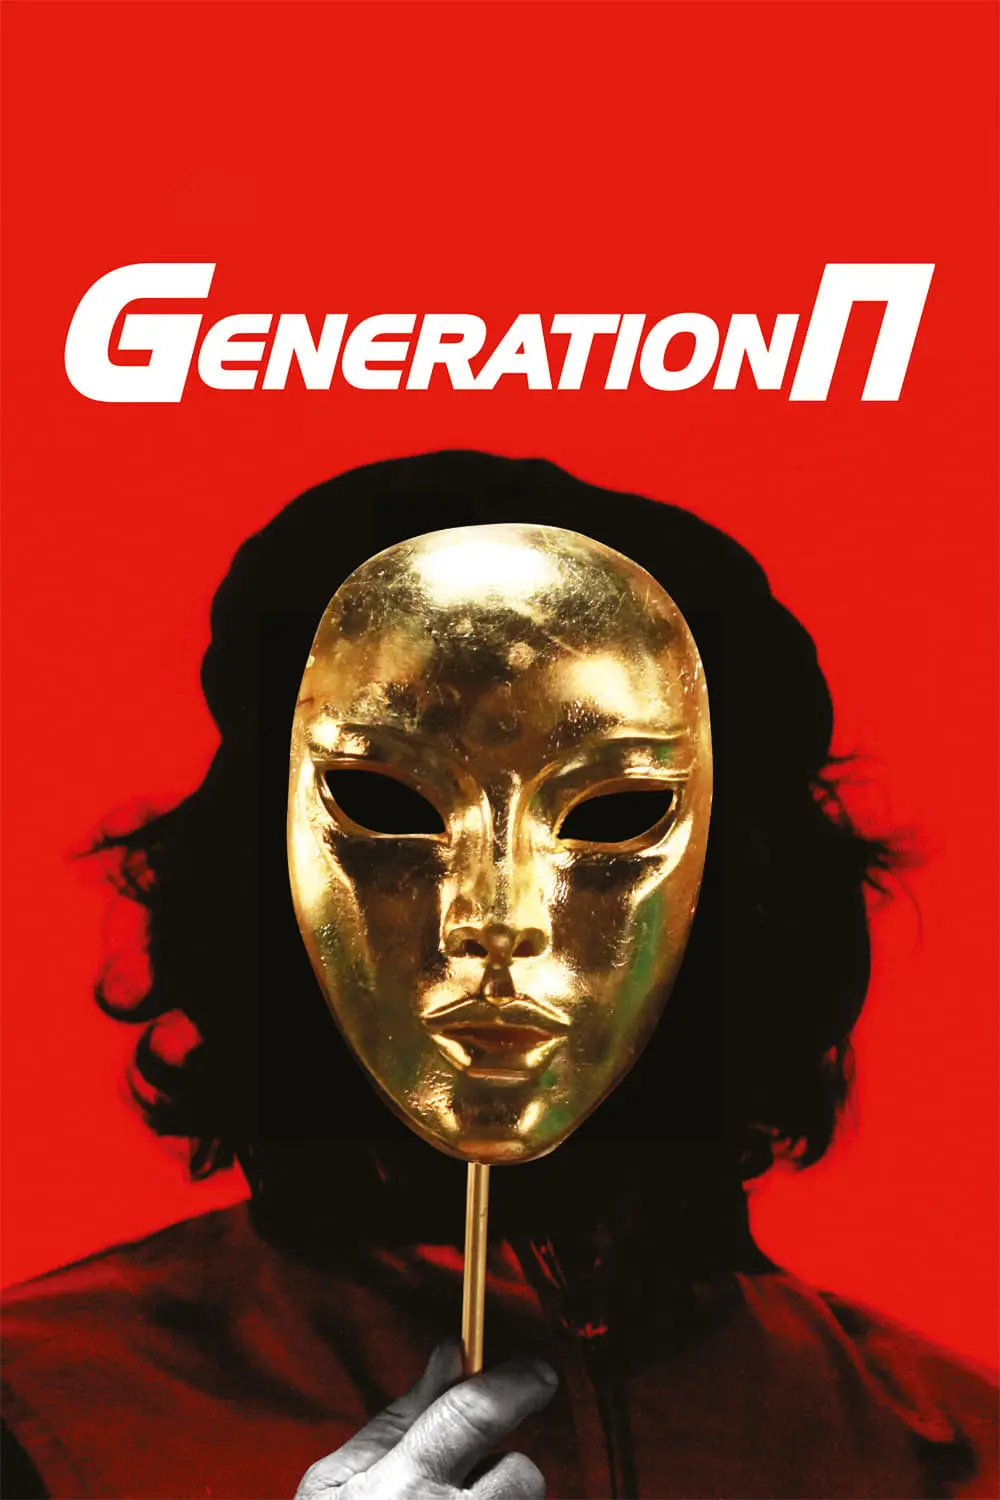 Generation P_peliplat